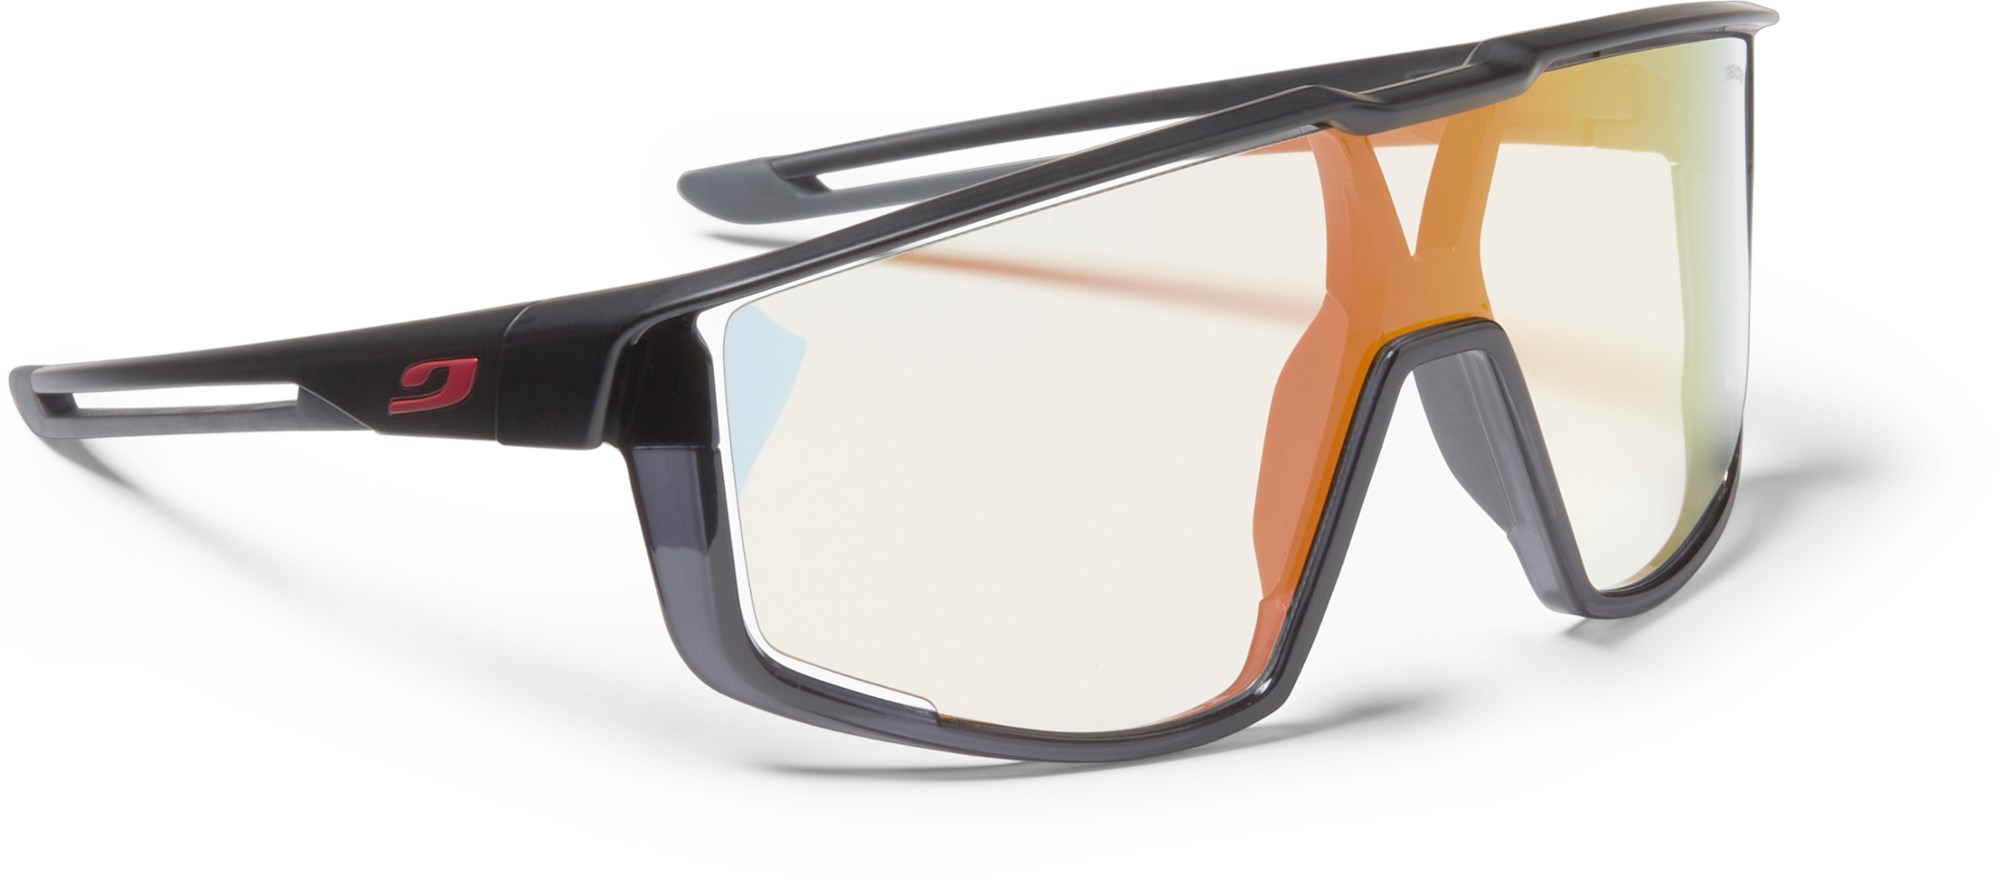 Солнцезащитные очки Fury Julbo, черный солнцезащитные очки svetodar116 очки велосипедные спорт очки темно синий белый